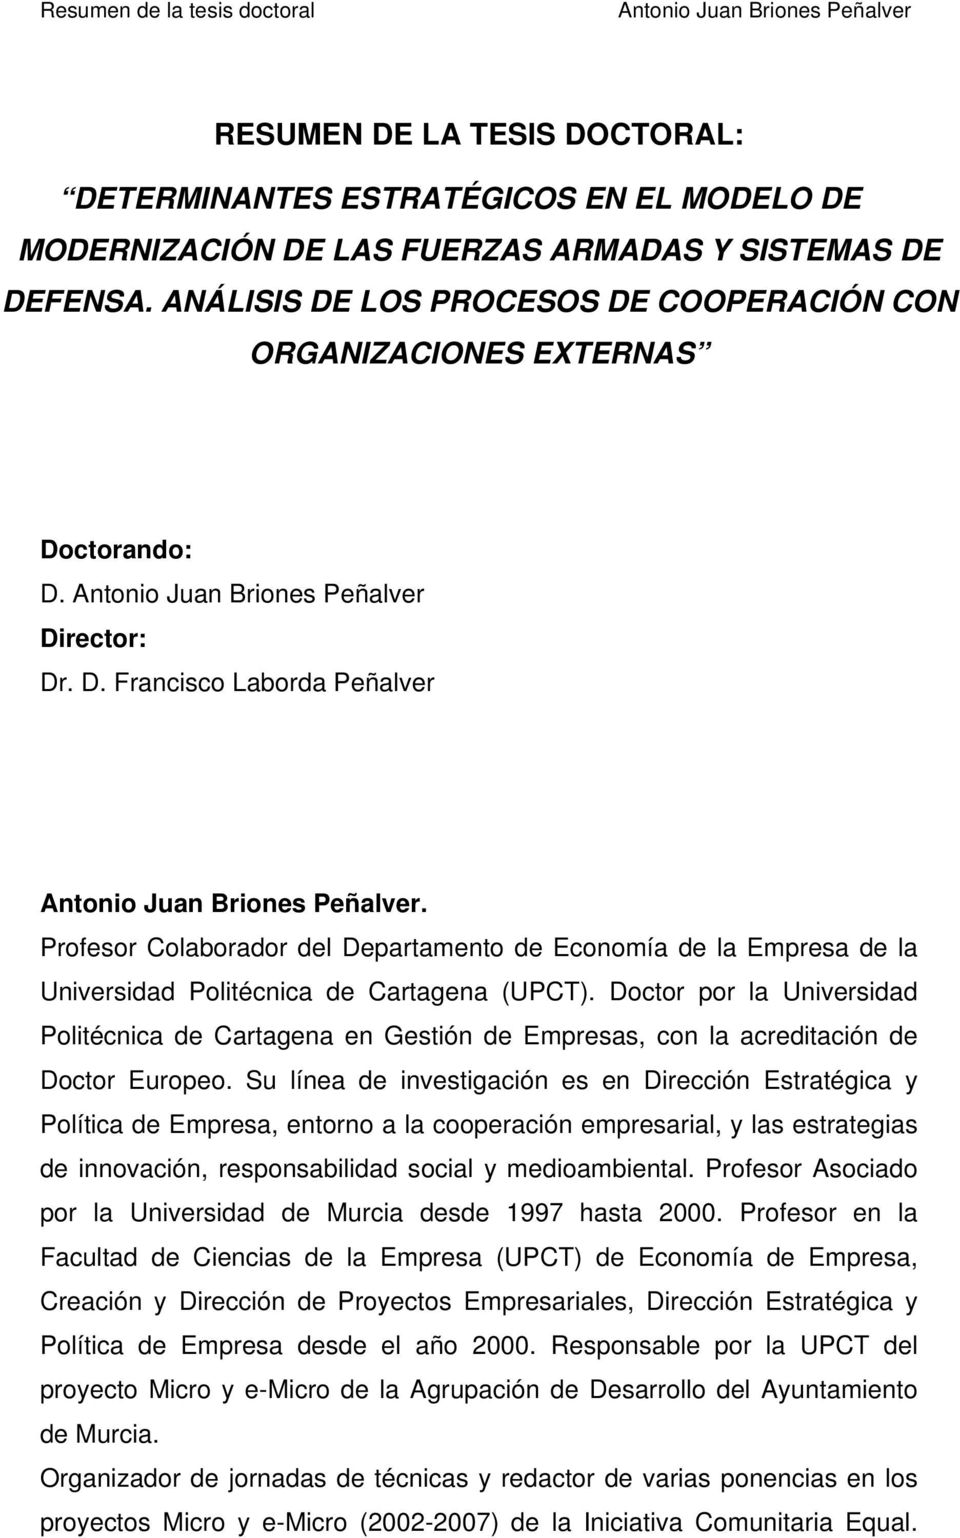 Profesor Colaborador del Departamento de Economía de la Empresa de la Universidad Politécnica de Cartagena (UPCT).